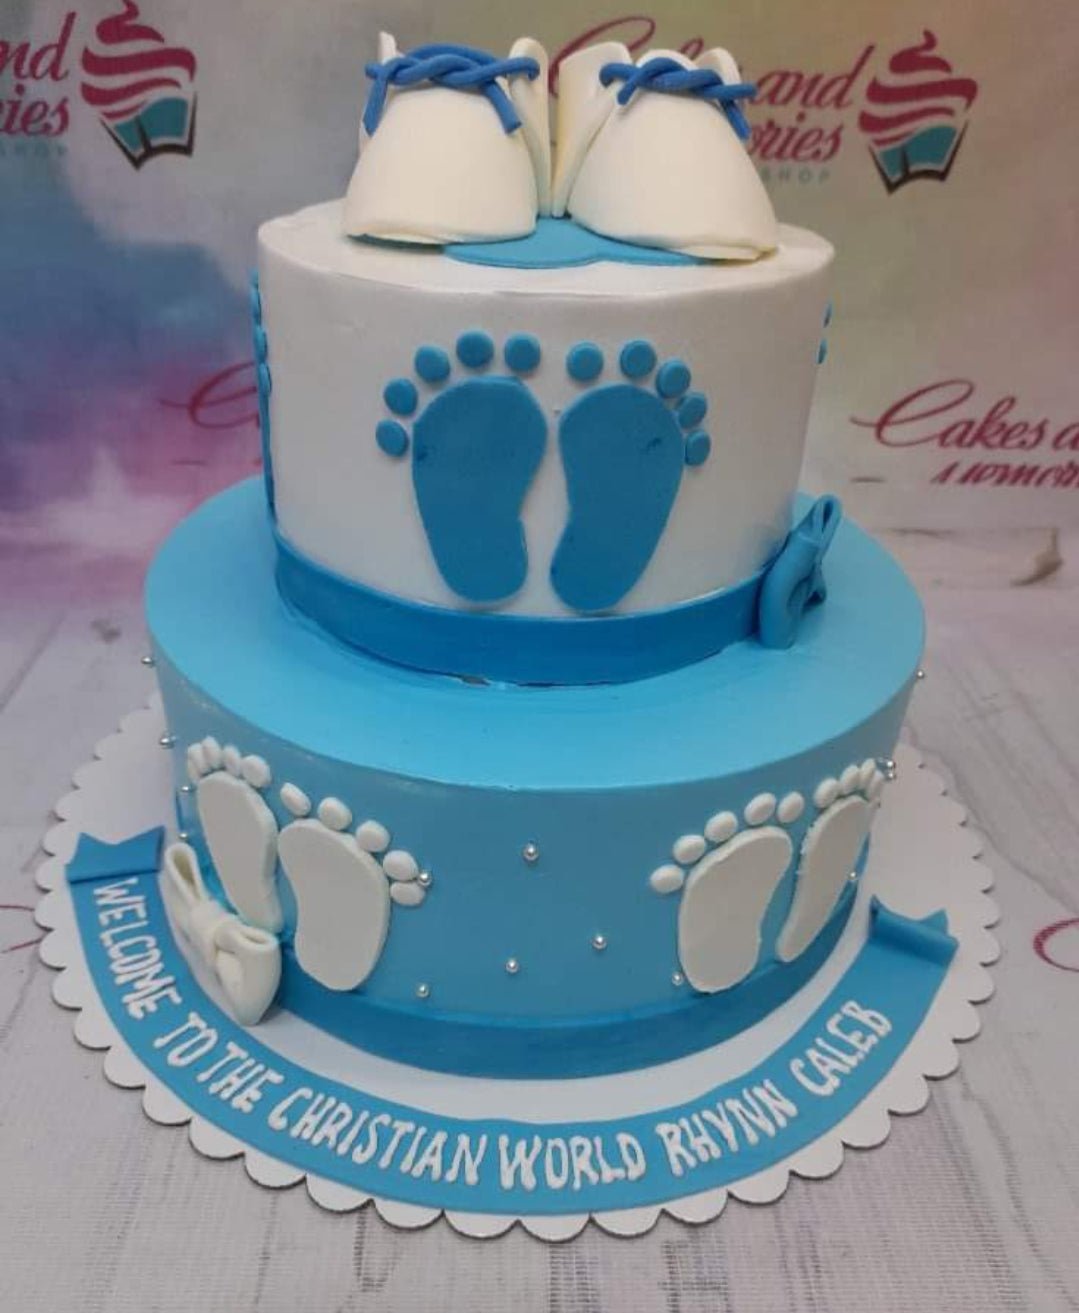 How to Make a Beautiful Number Cake - Aloha Botts & Tots | Diy birthday cake,  Number 2 cakes, Number cakes